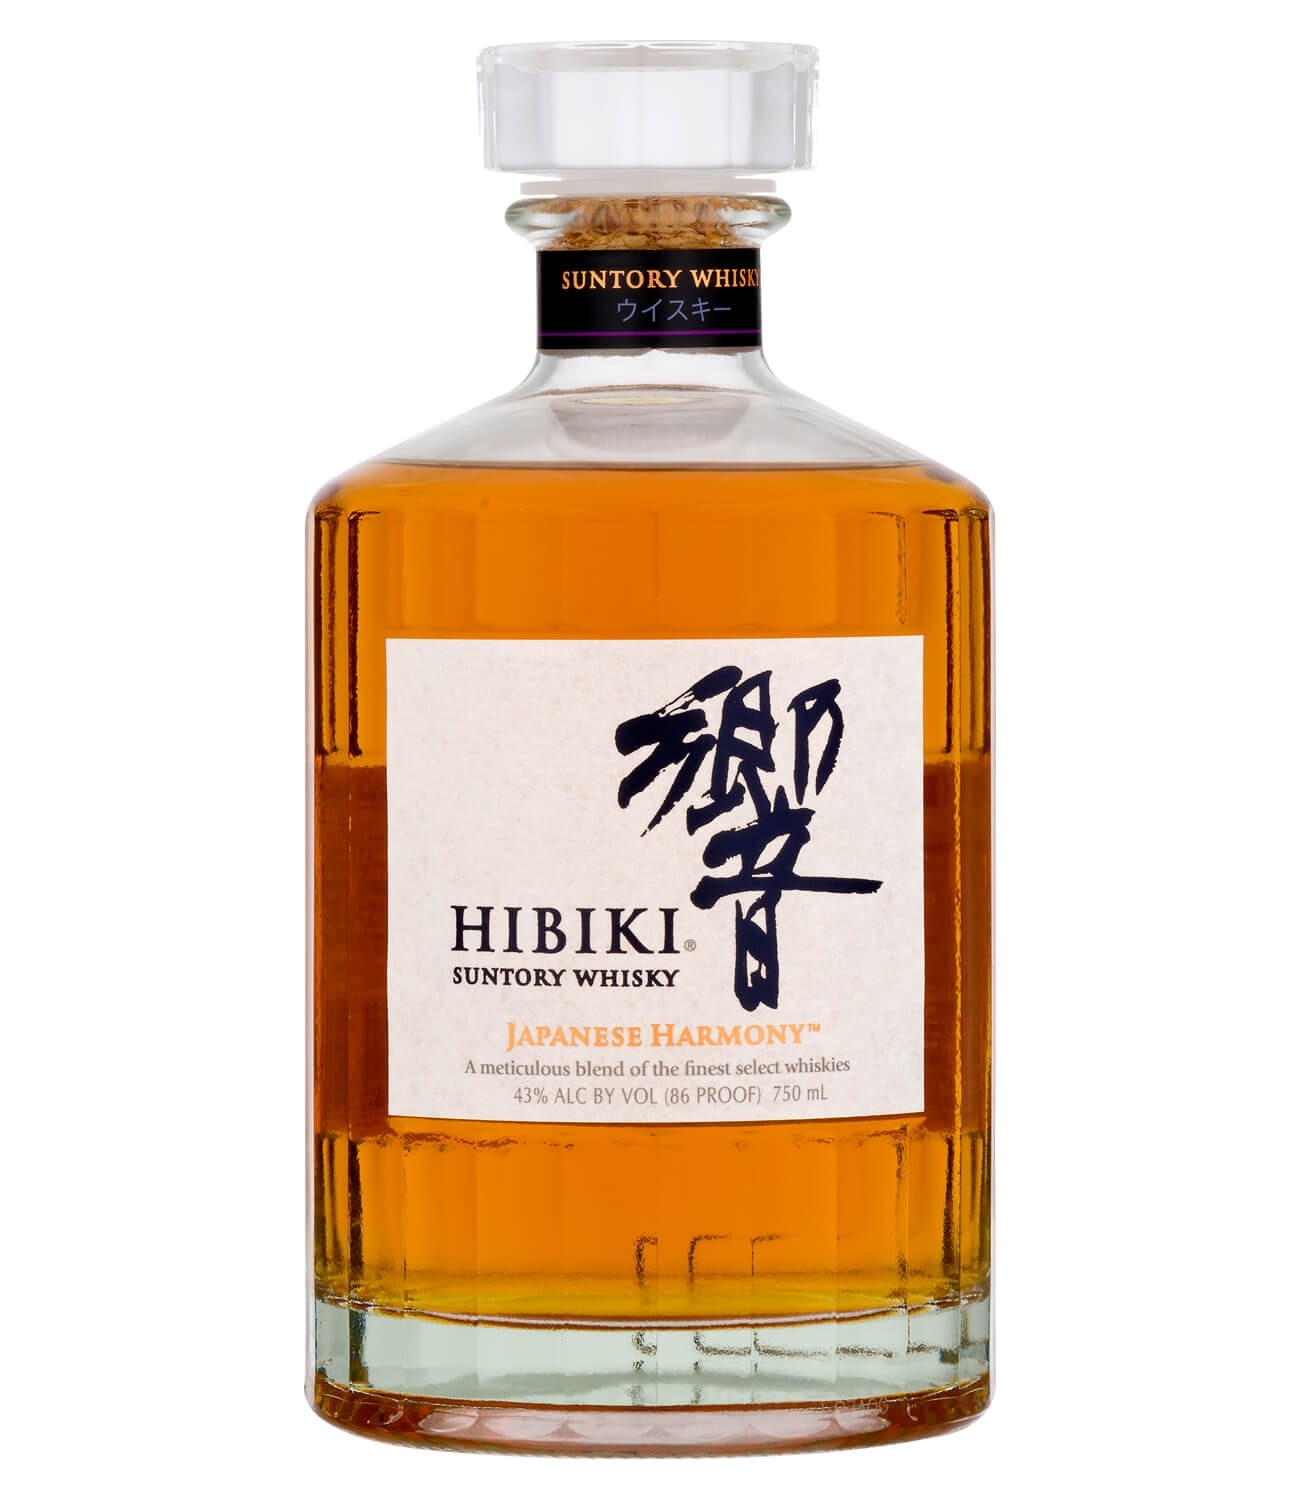 Hibiki Japanese Harmony Whisky @ Costco $59.99